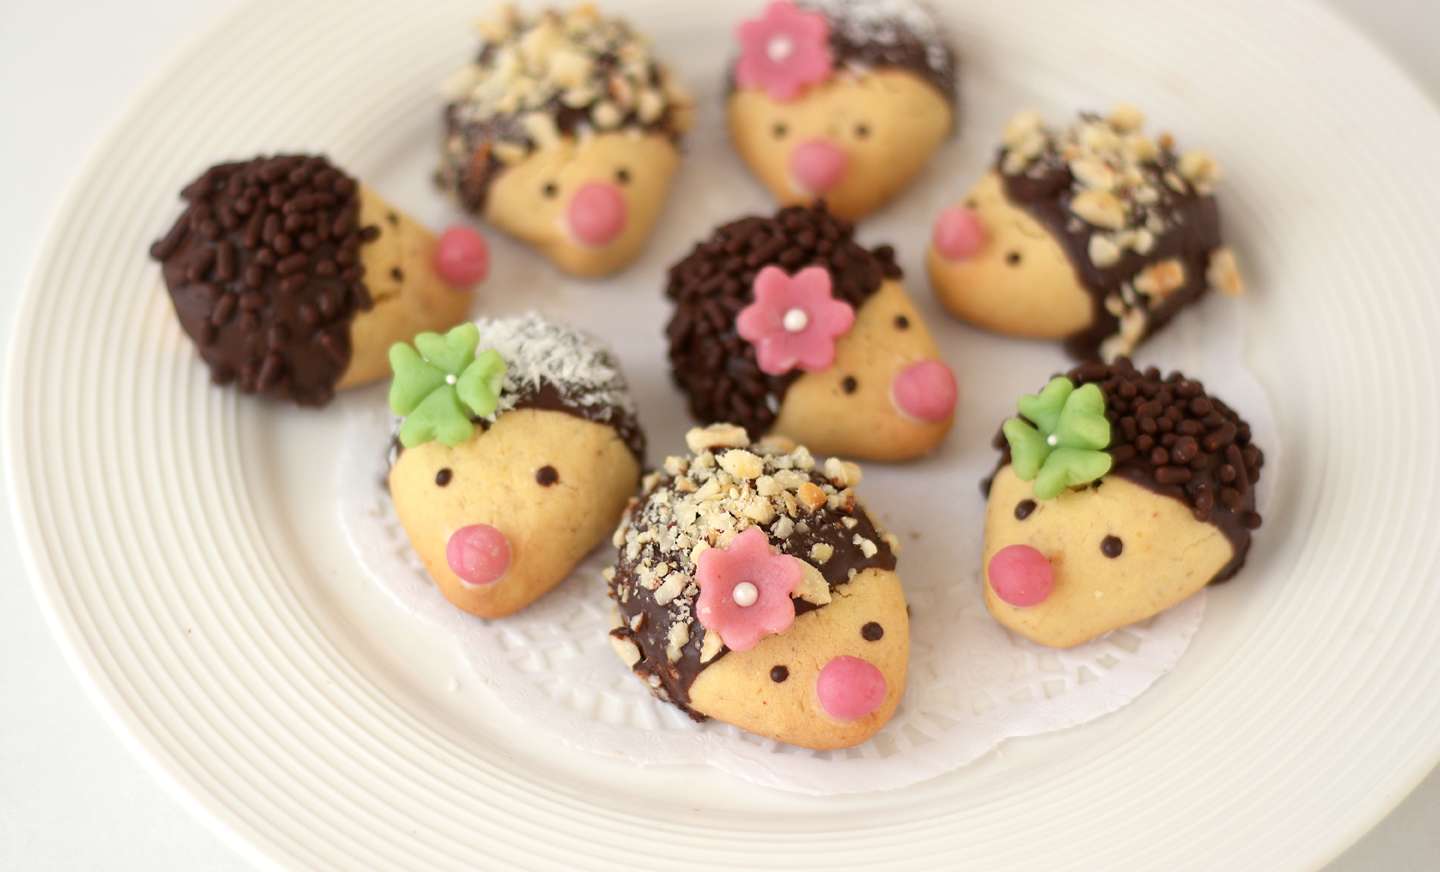 Hedgehog Cookies